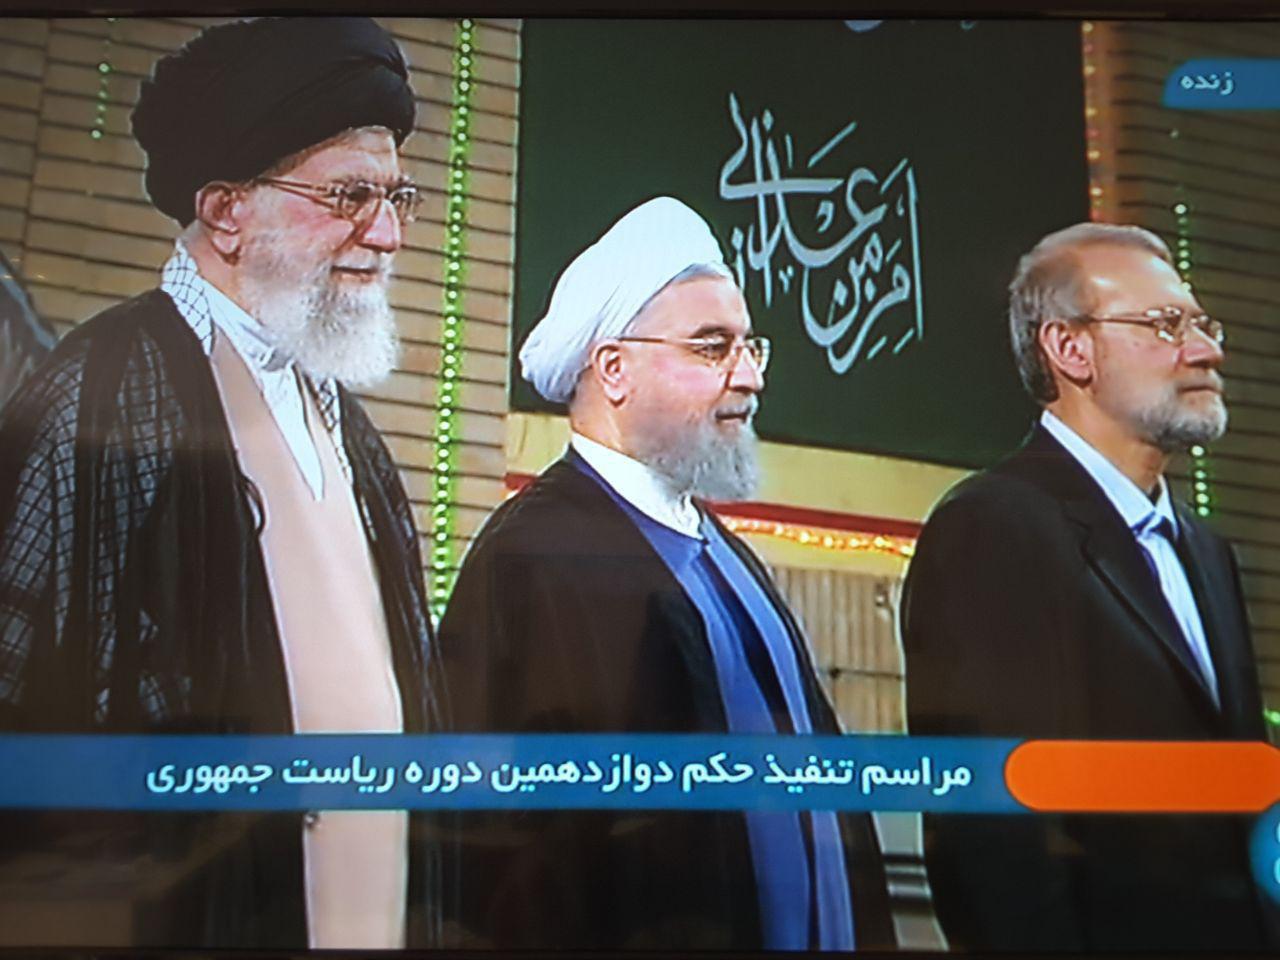 آغاز مراسم تنفیذ ریاست جمهوری روحانی/ وزیر کشور در حال گزارش دادن از روند انتخابات